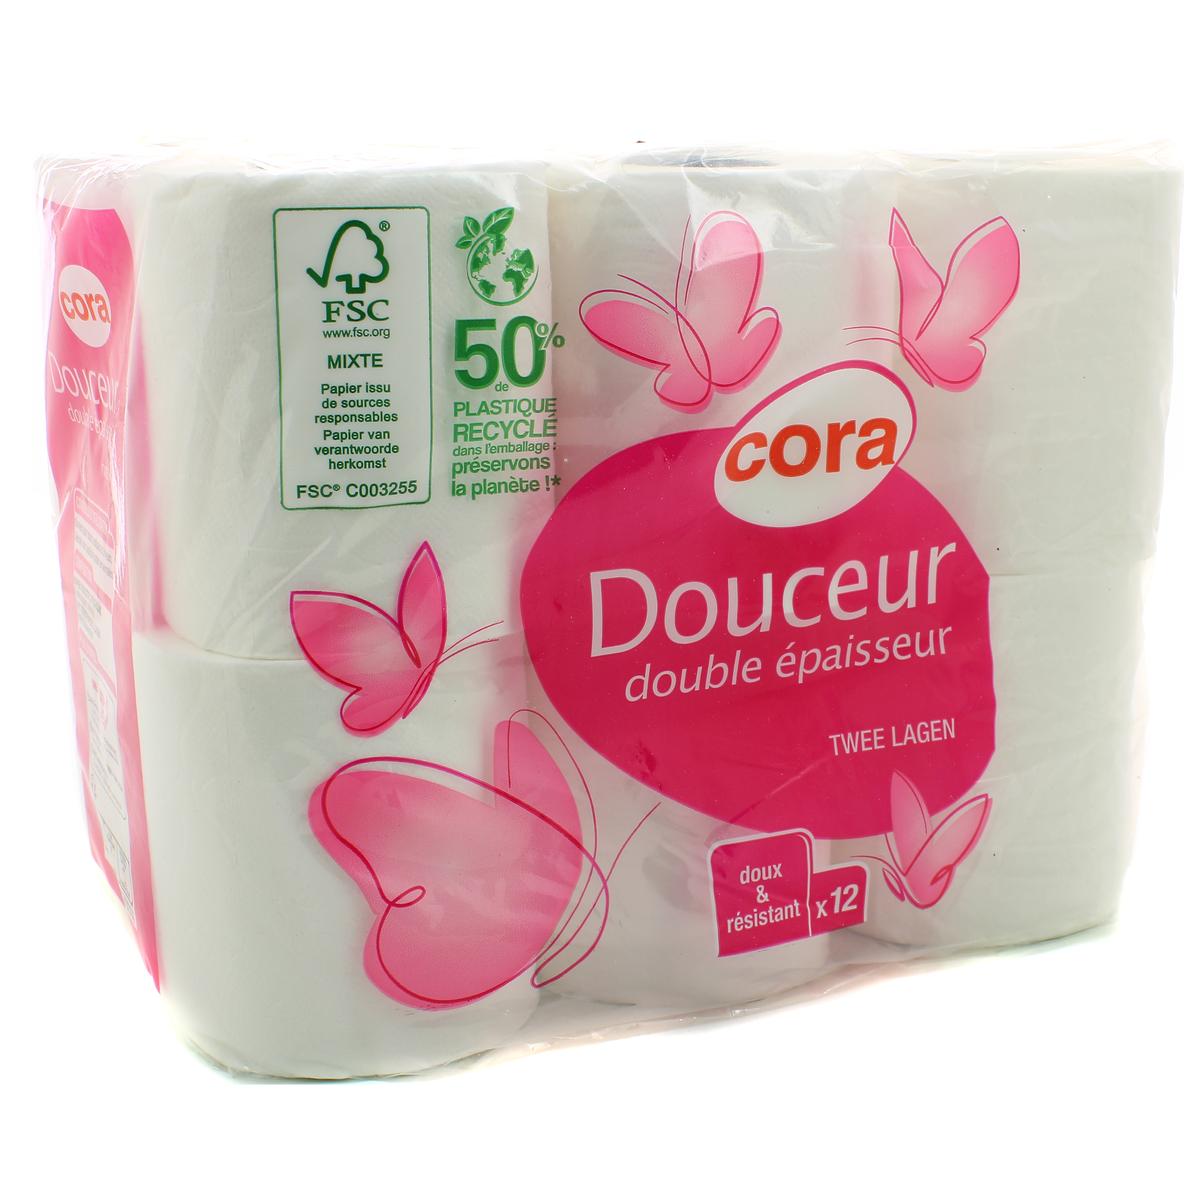 Promo Cora Papier toilette 12 max = 24 rouleaux classic Maxi rouleau